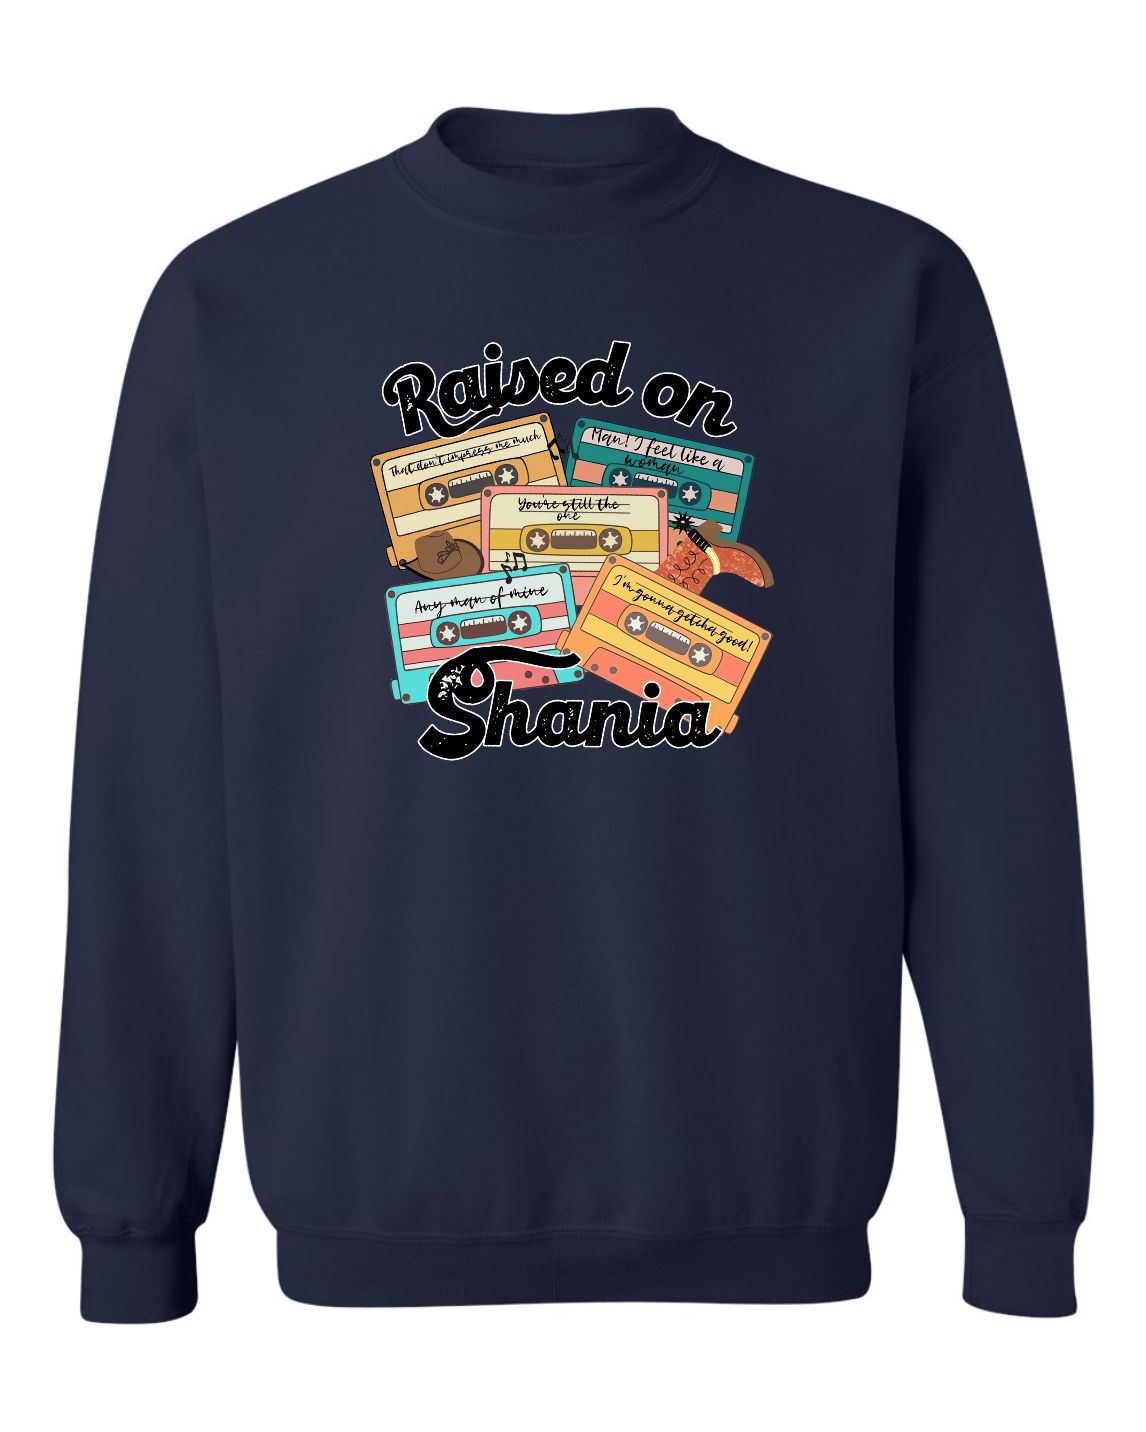 "Raised On Shania" Unisex Crewneck Sweatshirt